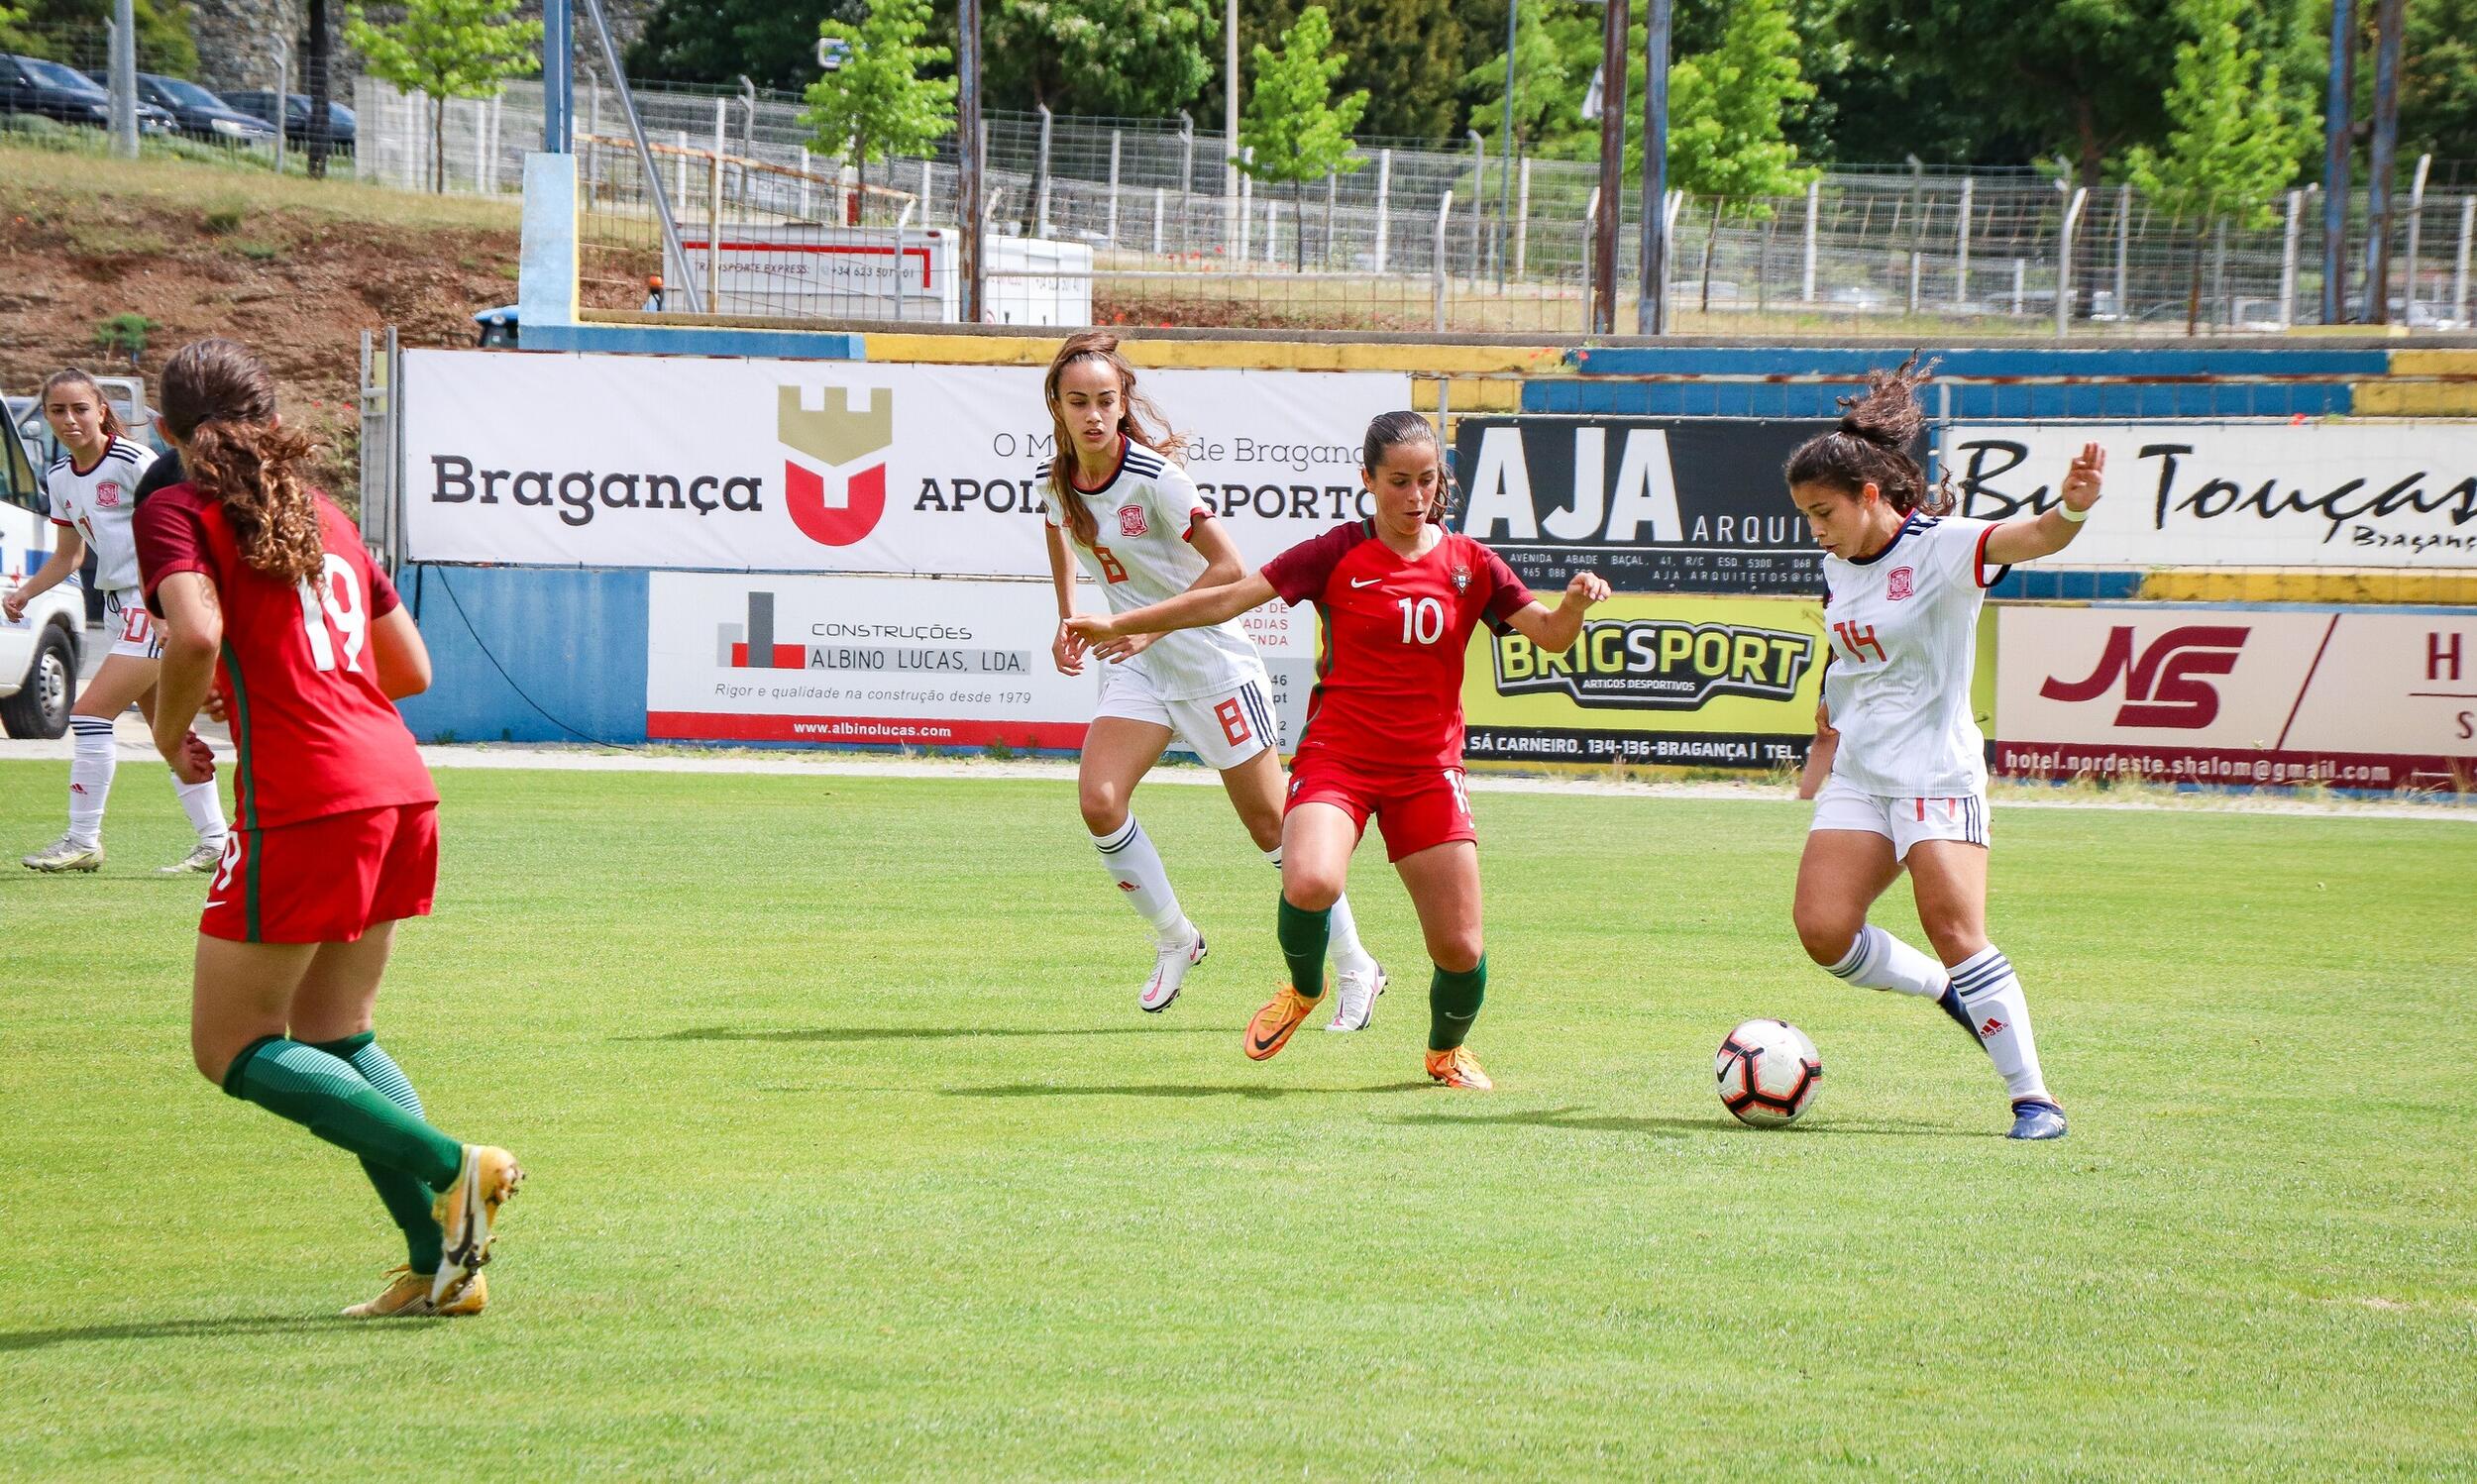 Bragança palco do Torneio de Desenvolvimento da UEFA – Futebol Feminino Sub-16